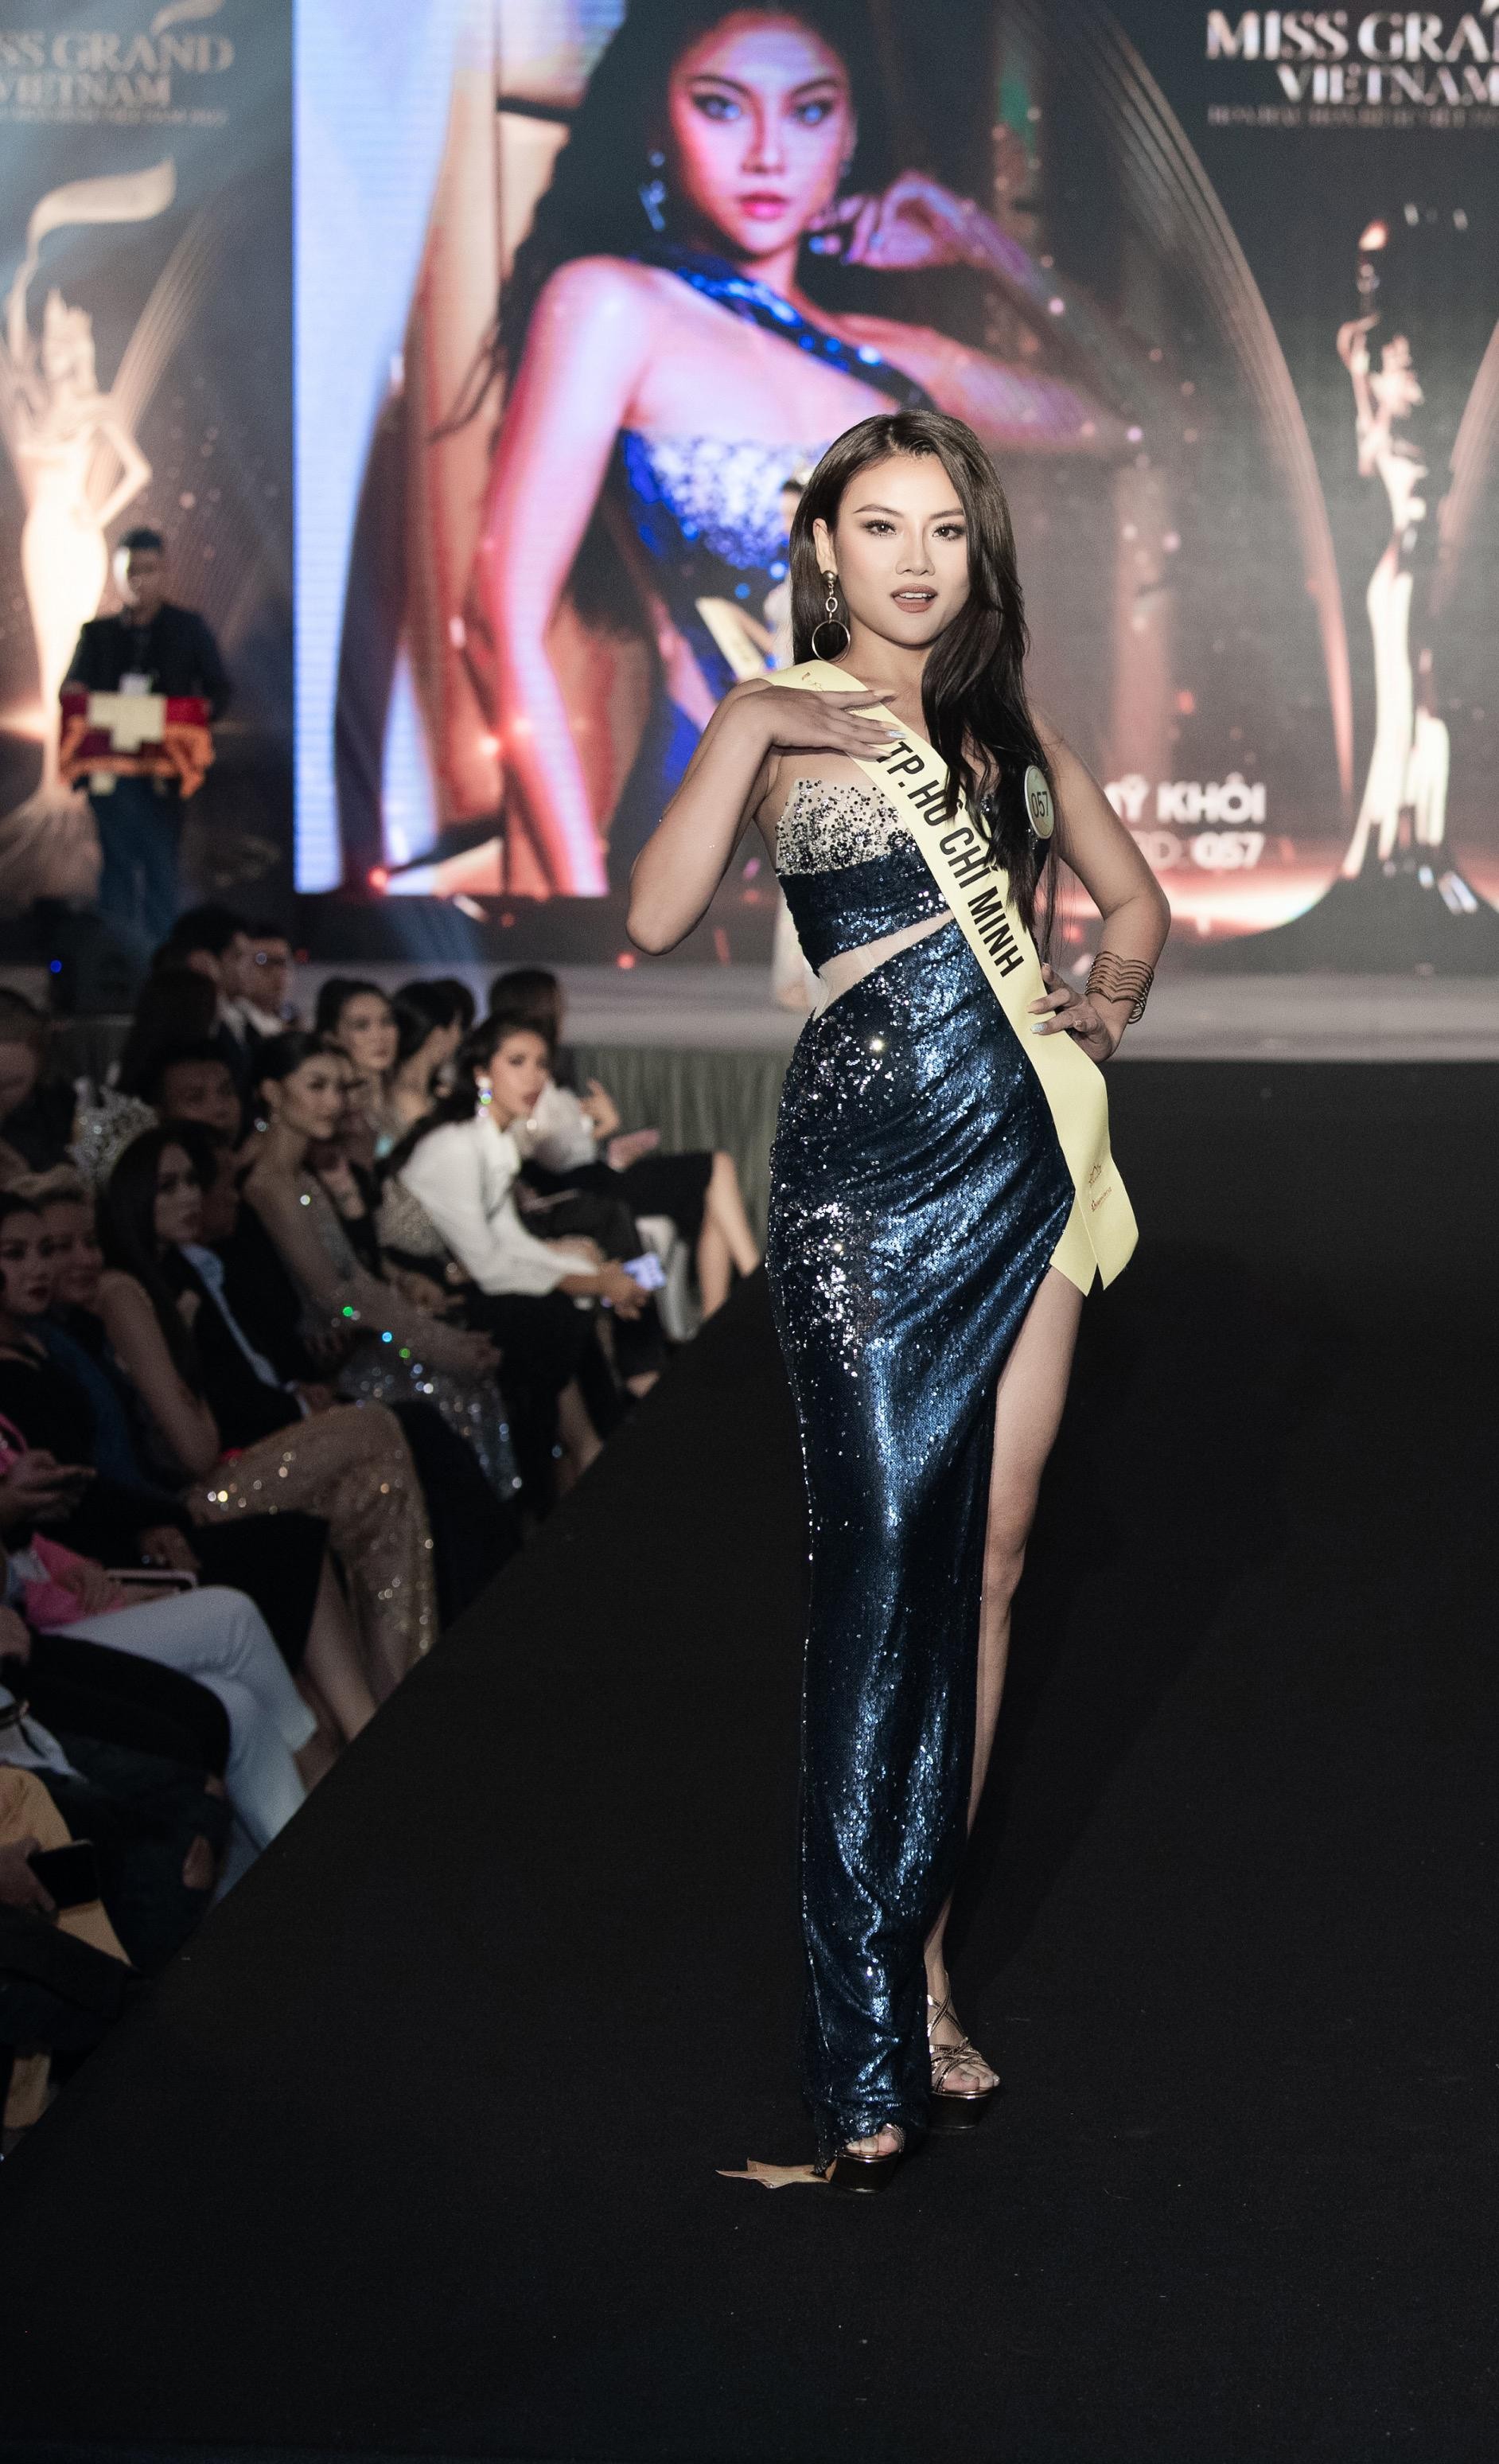 Mai Ngô, Quỳnh Châu tung chiêu catwalk độc đáo tại lễ nhận sash của Miss Grand Vietnam 2022 - Ảnh 6.